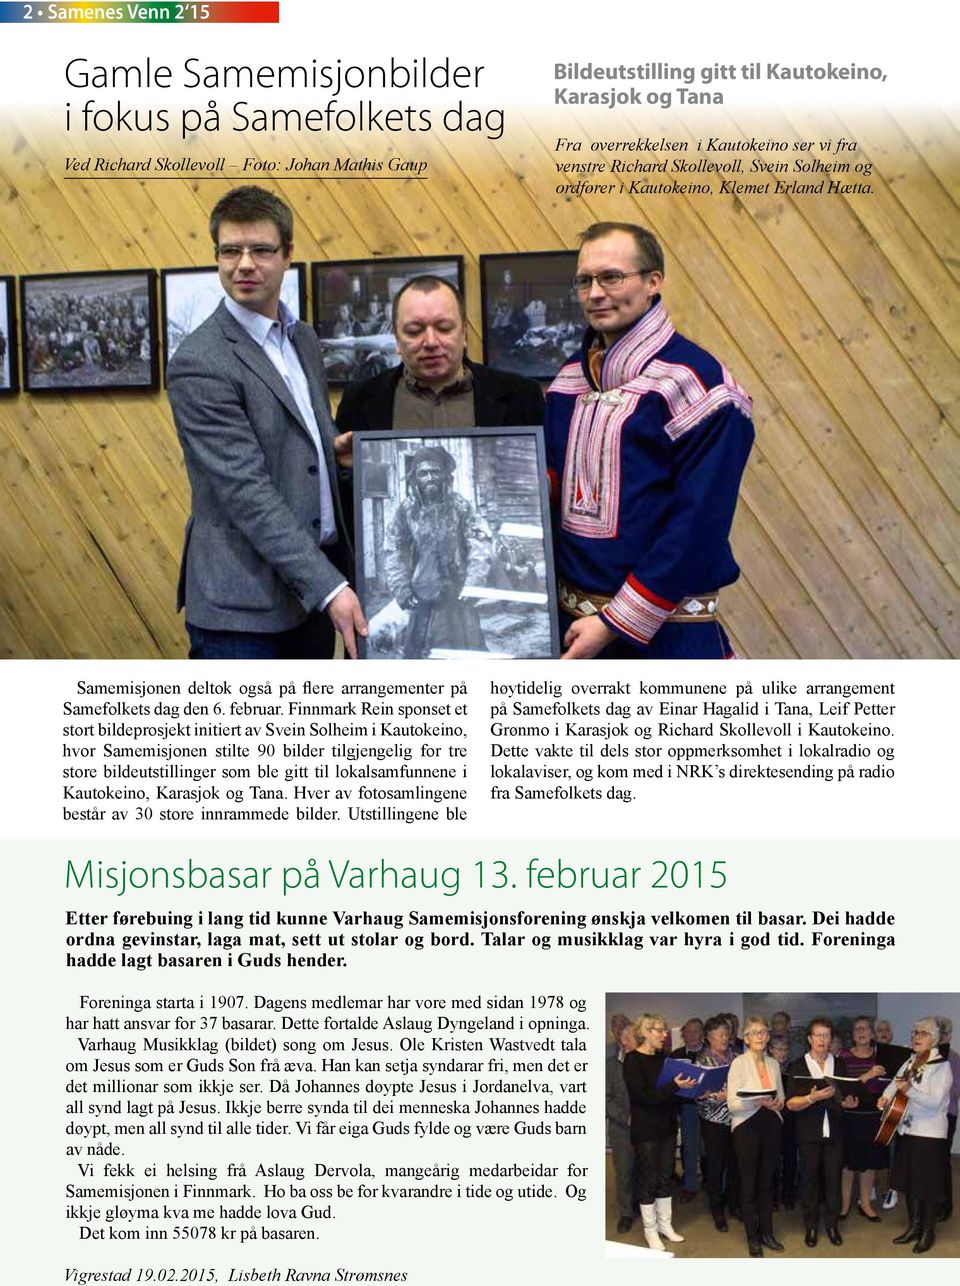 Finnmark Rein sponset et stort bildeprosjekt initiert av Svein Solheim i Kautokeino, hvor Samemisjonen stilte 90 bilder tilgjengelig for tre store bildeutstillinger som ble gitt til lokalsamfunnene i